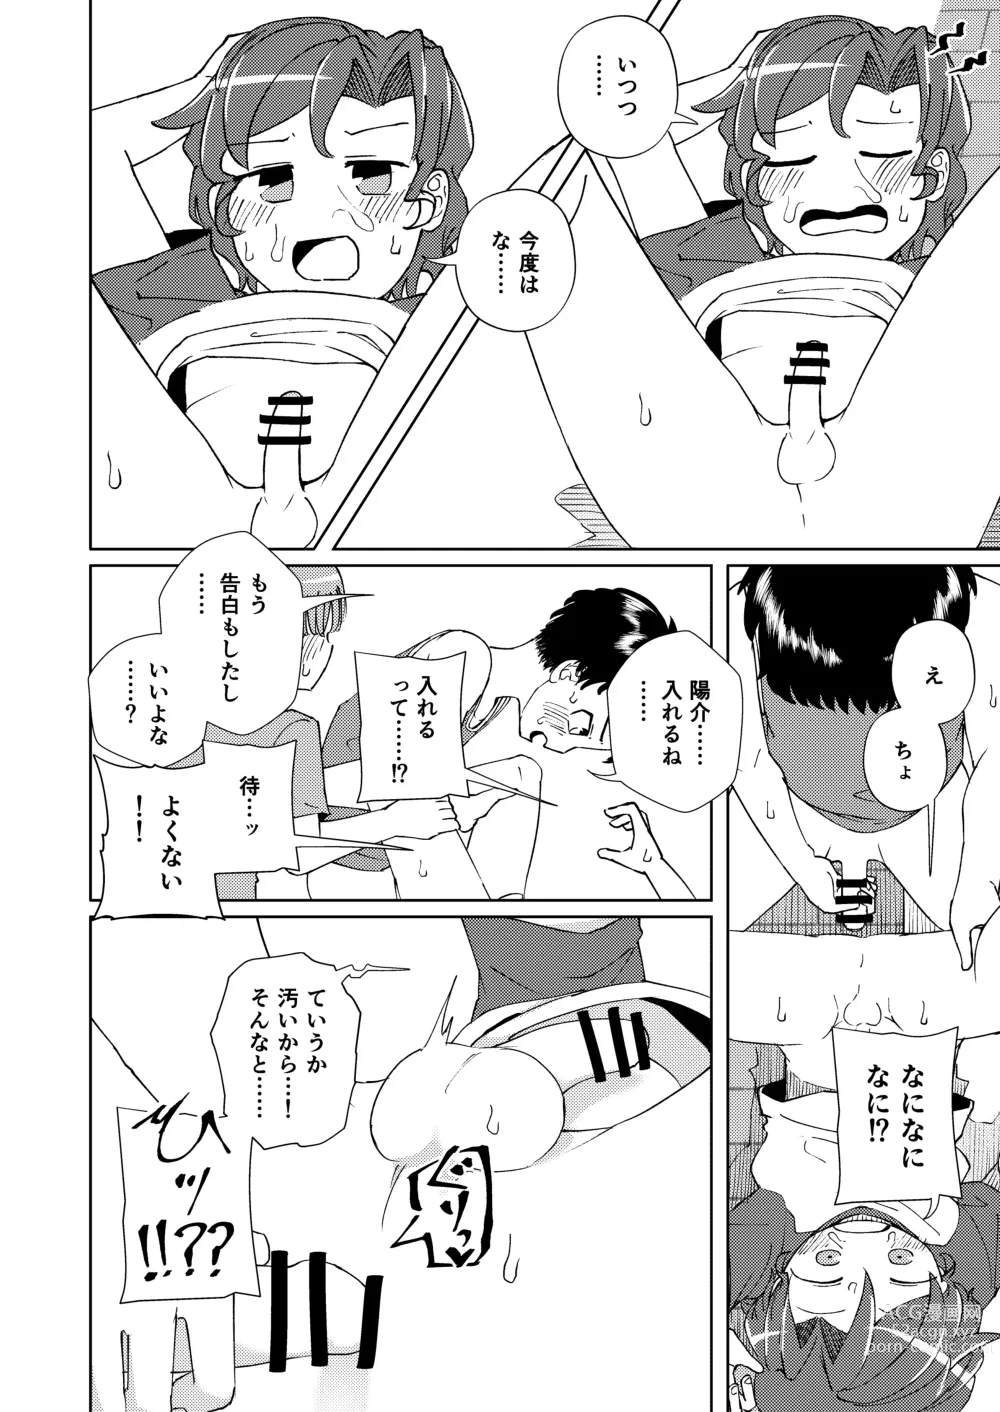 Page 30 of doujinshi Shoujiki Iu to,